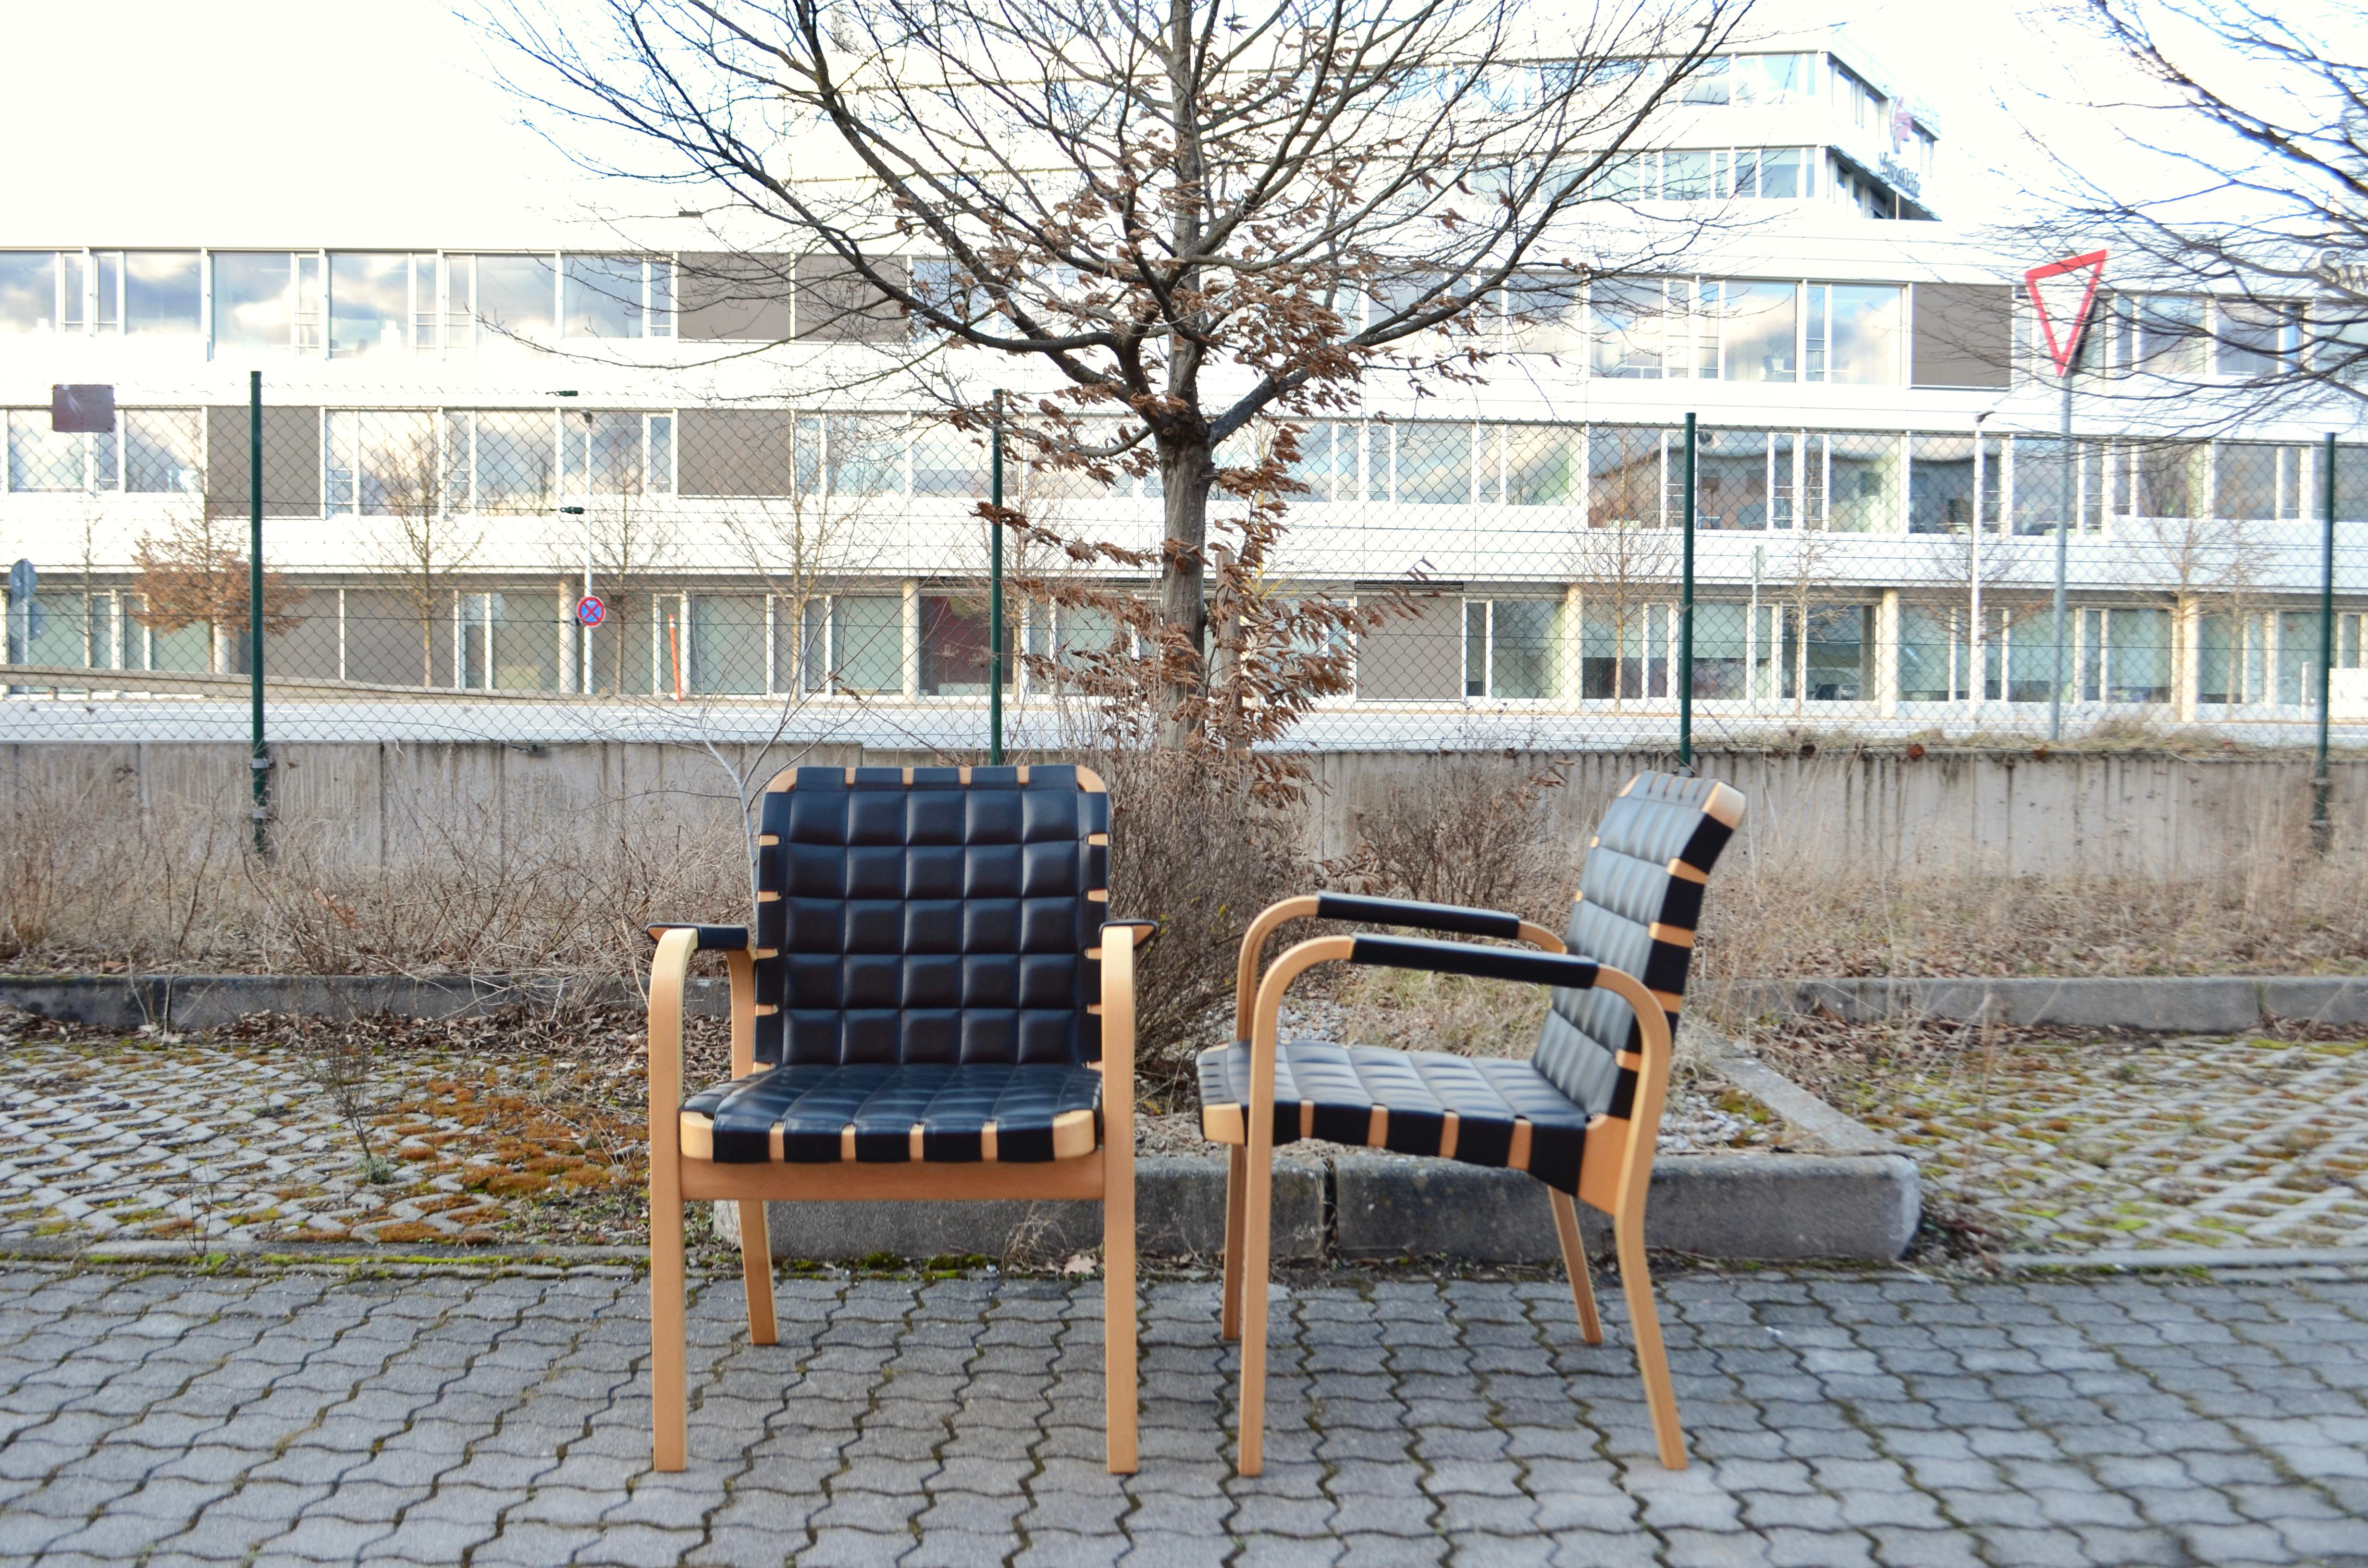 Seltener Sessel Modell 45 von Alvar Aalto, hergestellt aus laminiertem Birkenholz und schwarzem Anilinleder.
Hergestellt von Artek.
Die Stühle sind sehr bequem und leichtgewichtig.
Sie sind in bestem Zustand.
Er wurde nicht oft benutzt. Fast